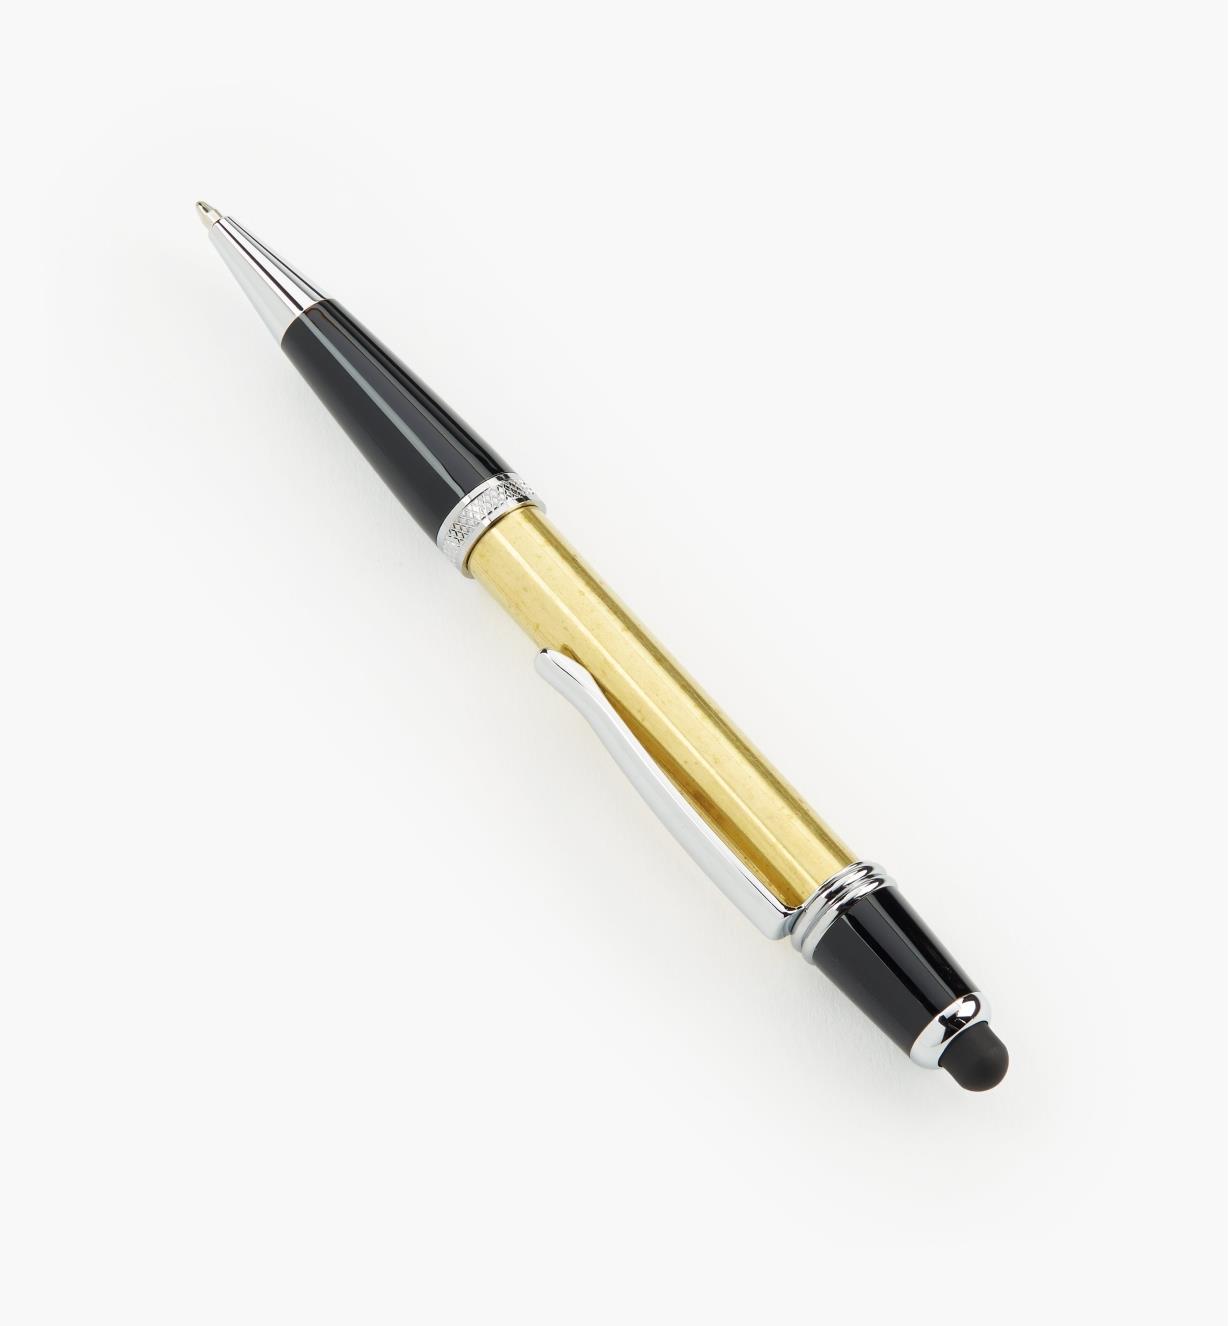 88K8041 - Sierra Stylus Pen, Chrome